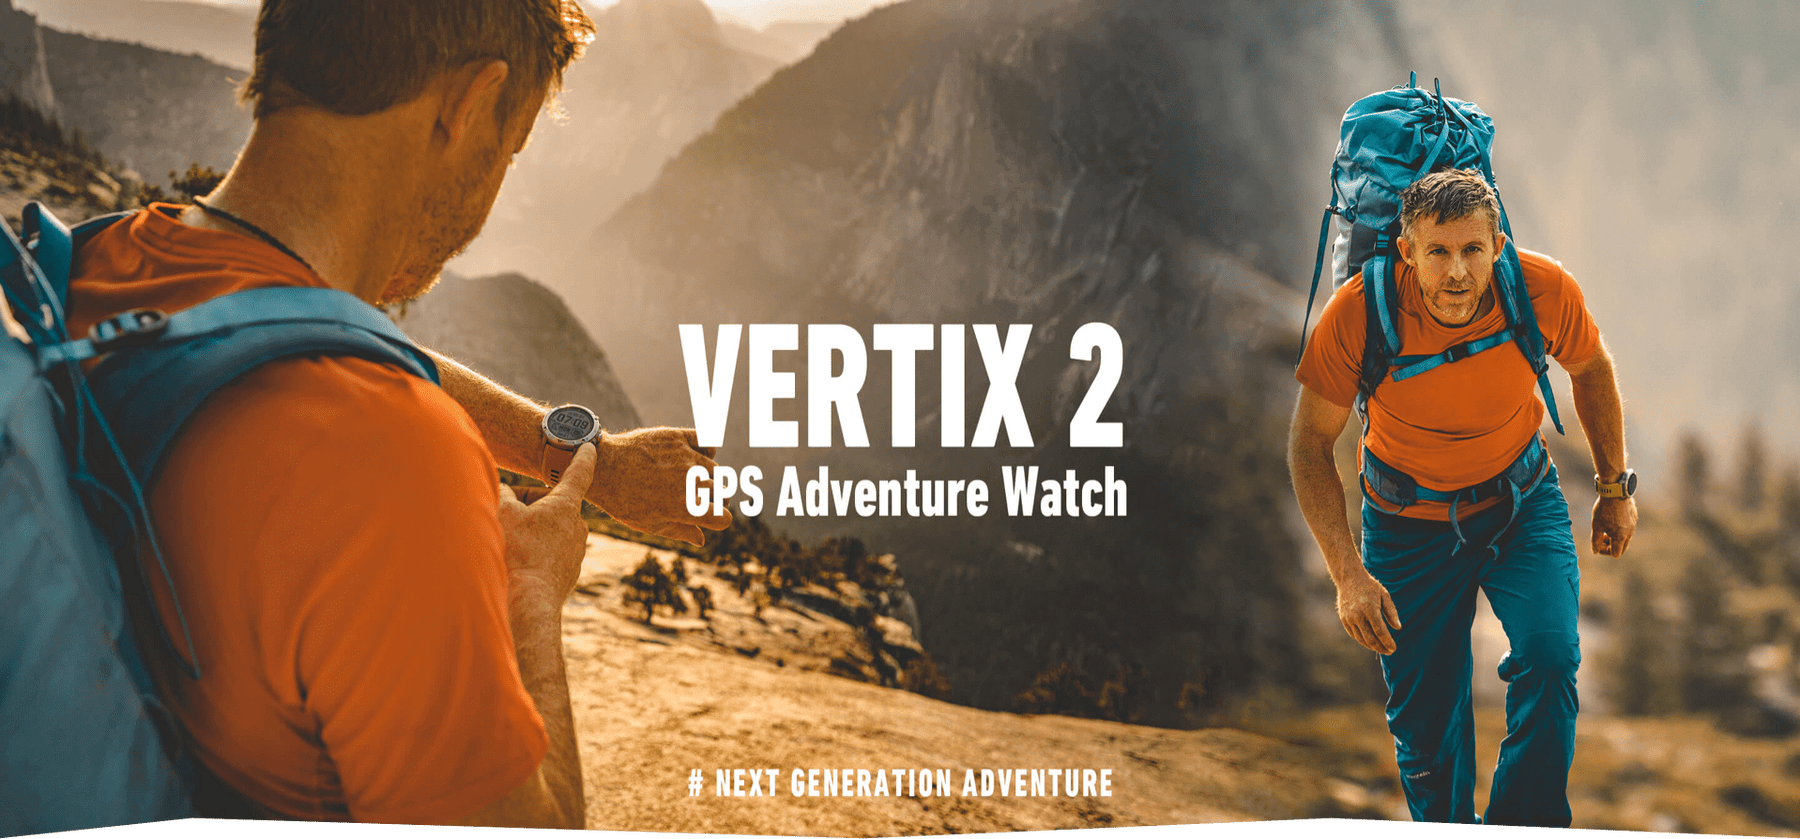 COROS VERTIX 2 - What's new?